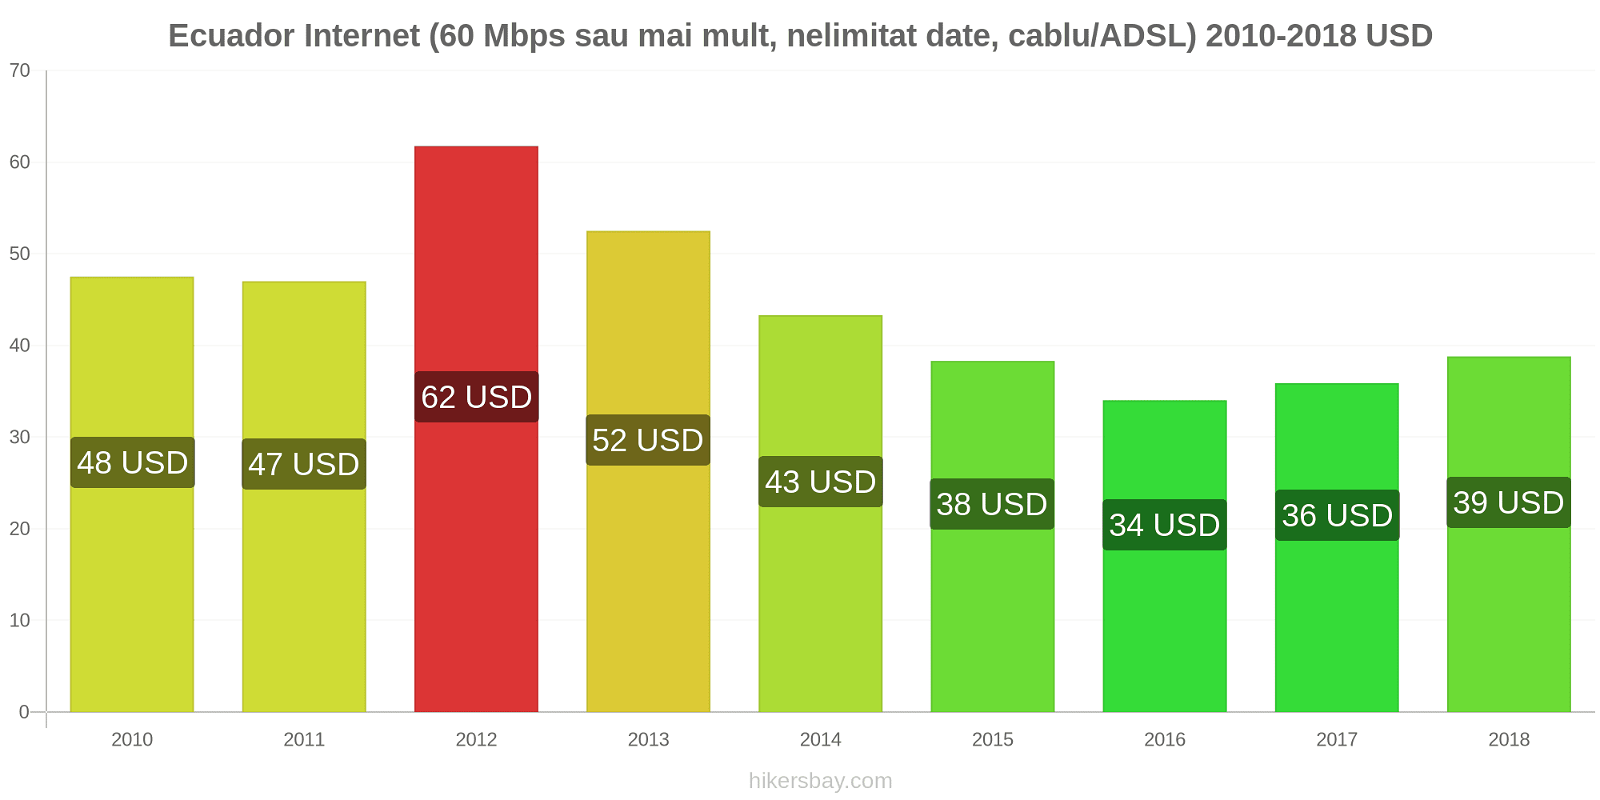 Ecuador schimbări de prețuri Internet (60 Mbps sau mai mult, date nelimitate, cablu/ADSL) hikersbay.com